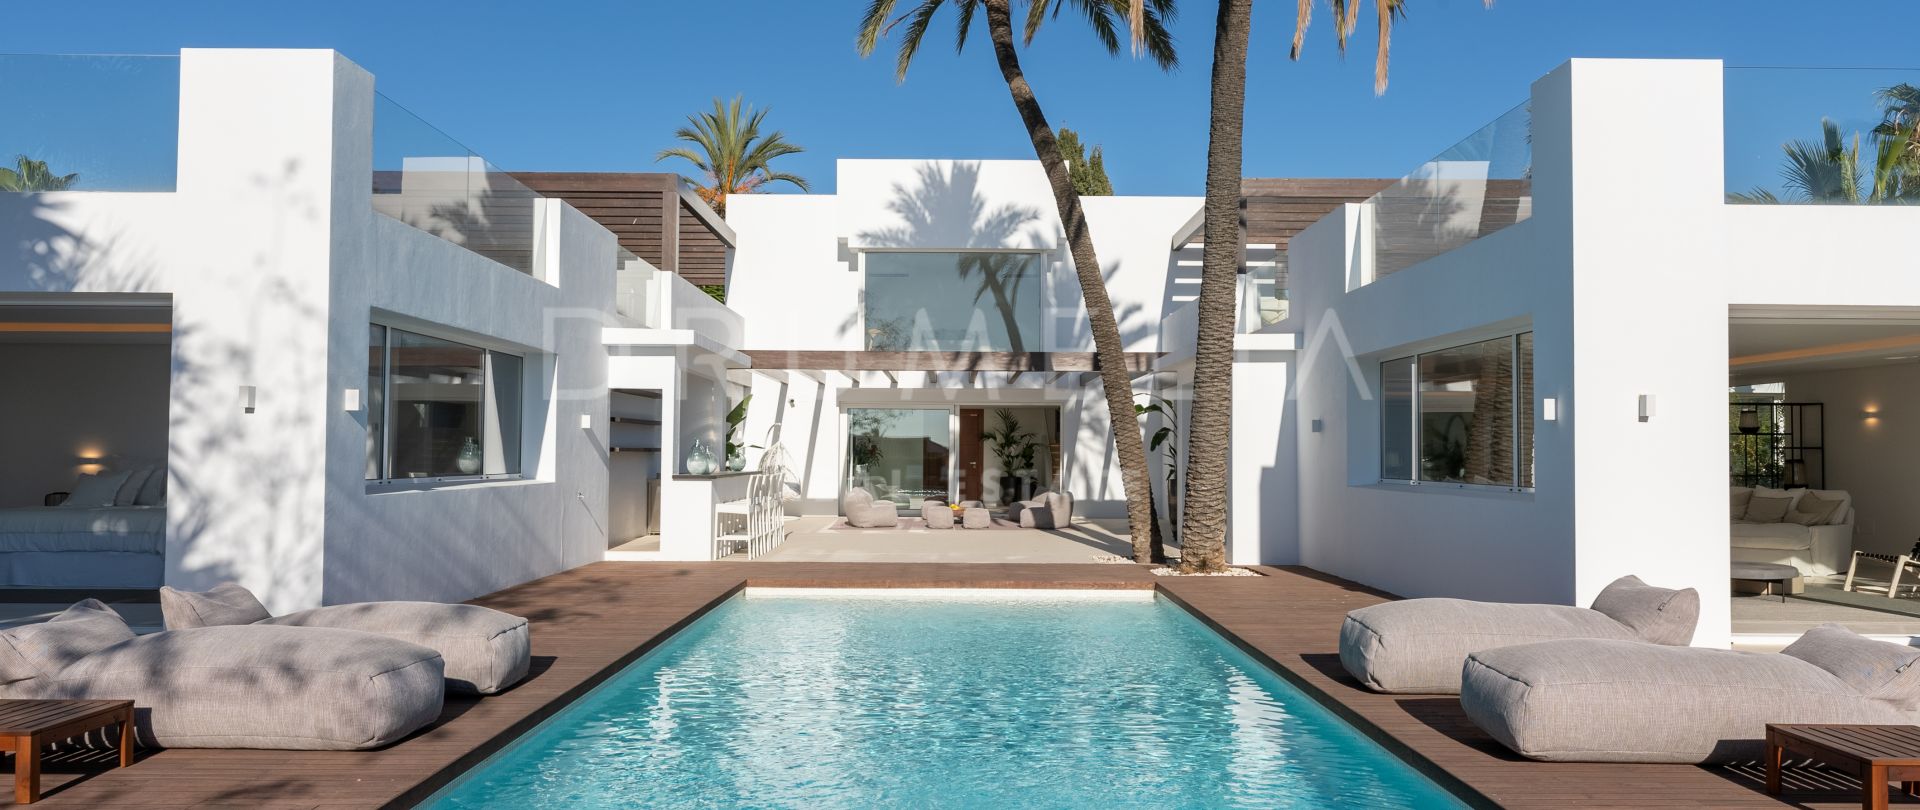 Enastående ny modern villa i strandnära Las Chapas, Marbella Öst